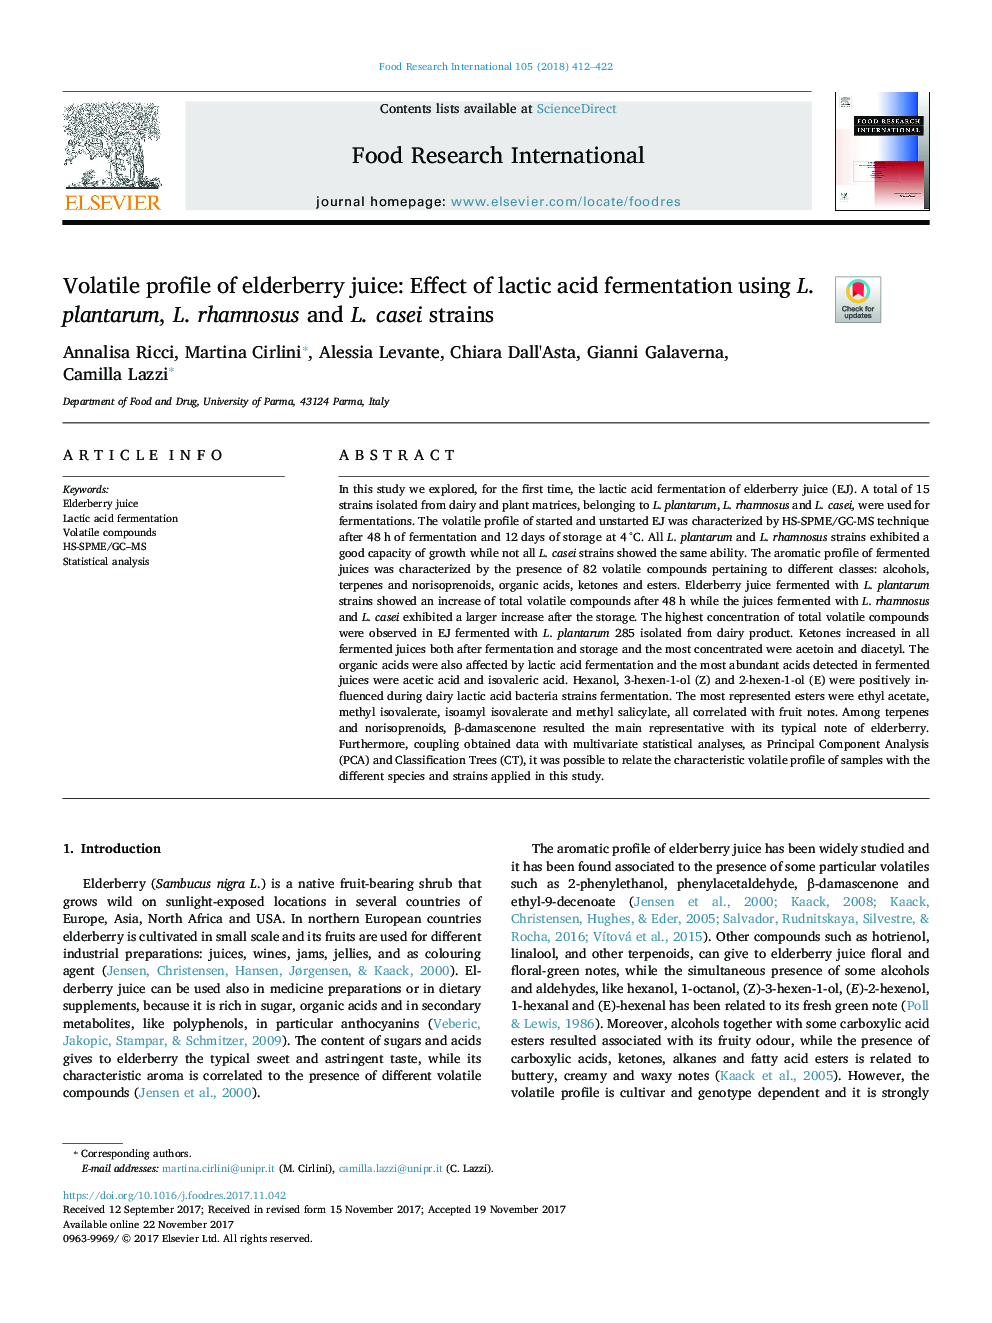 Volatile profile of elderberry juice: Effect of lactic acid fermentation using L. plantarum, L. rhamnosus and L. casei strains